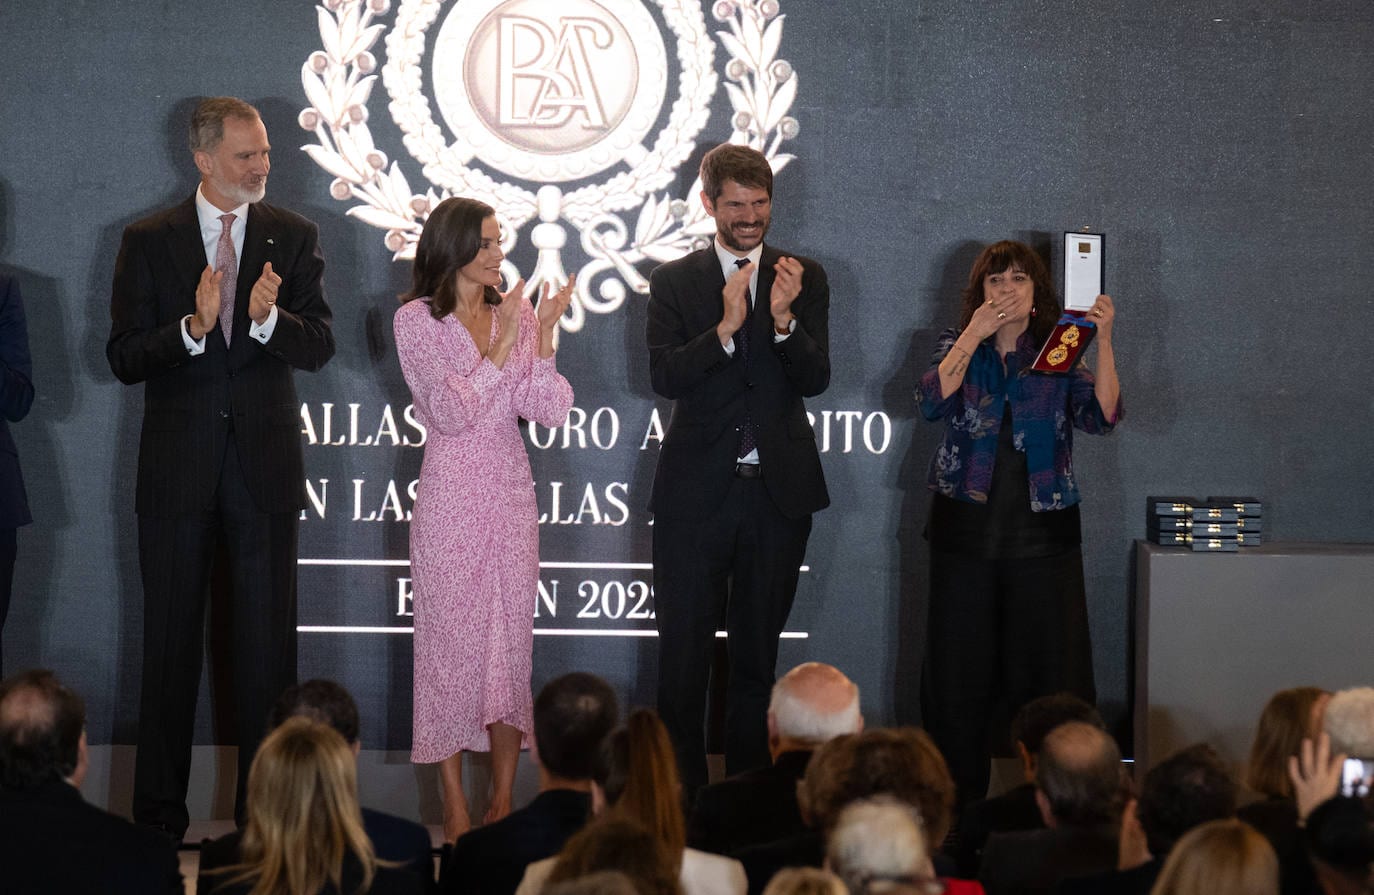 Fotos: los Reyes de España presiden el acto de entrega de las Medallas de Oro al Mérito en las Bellas Artes